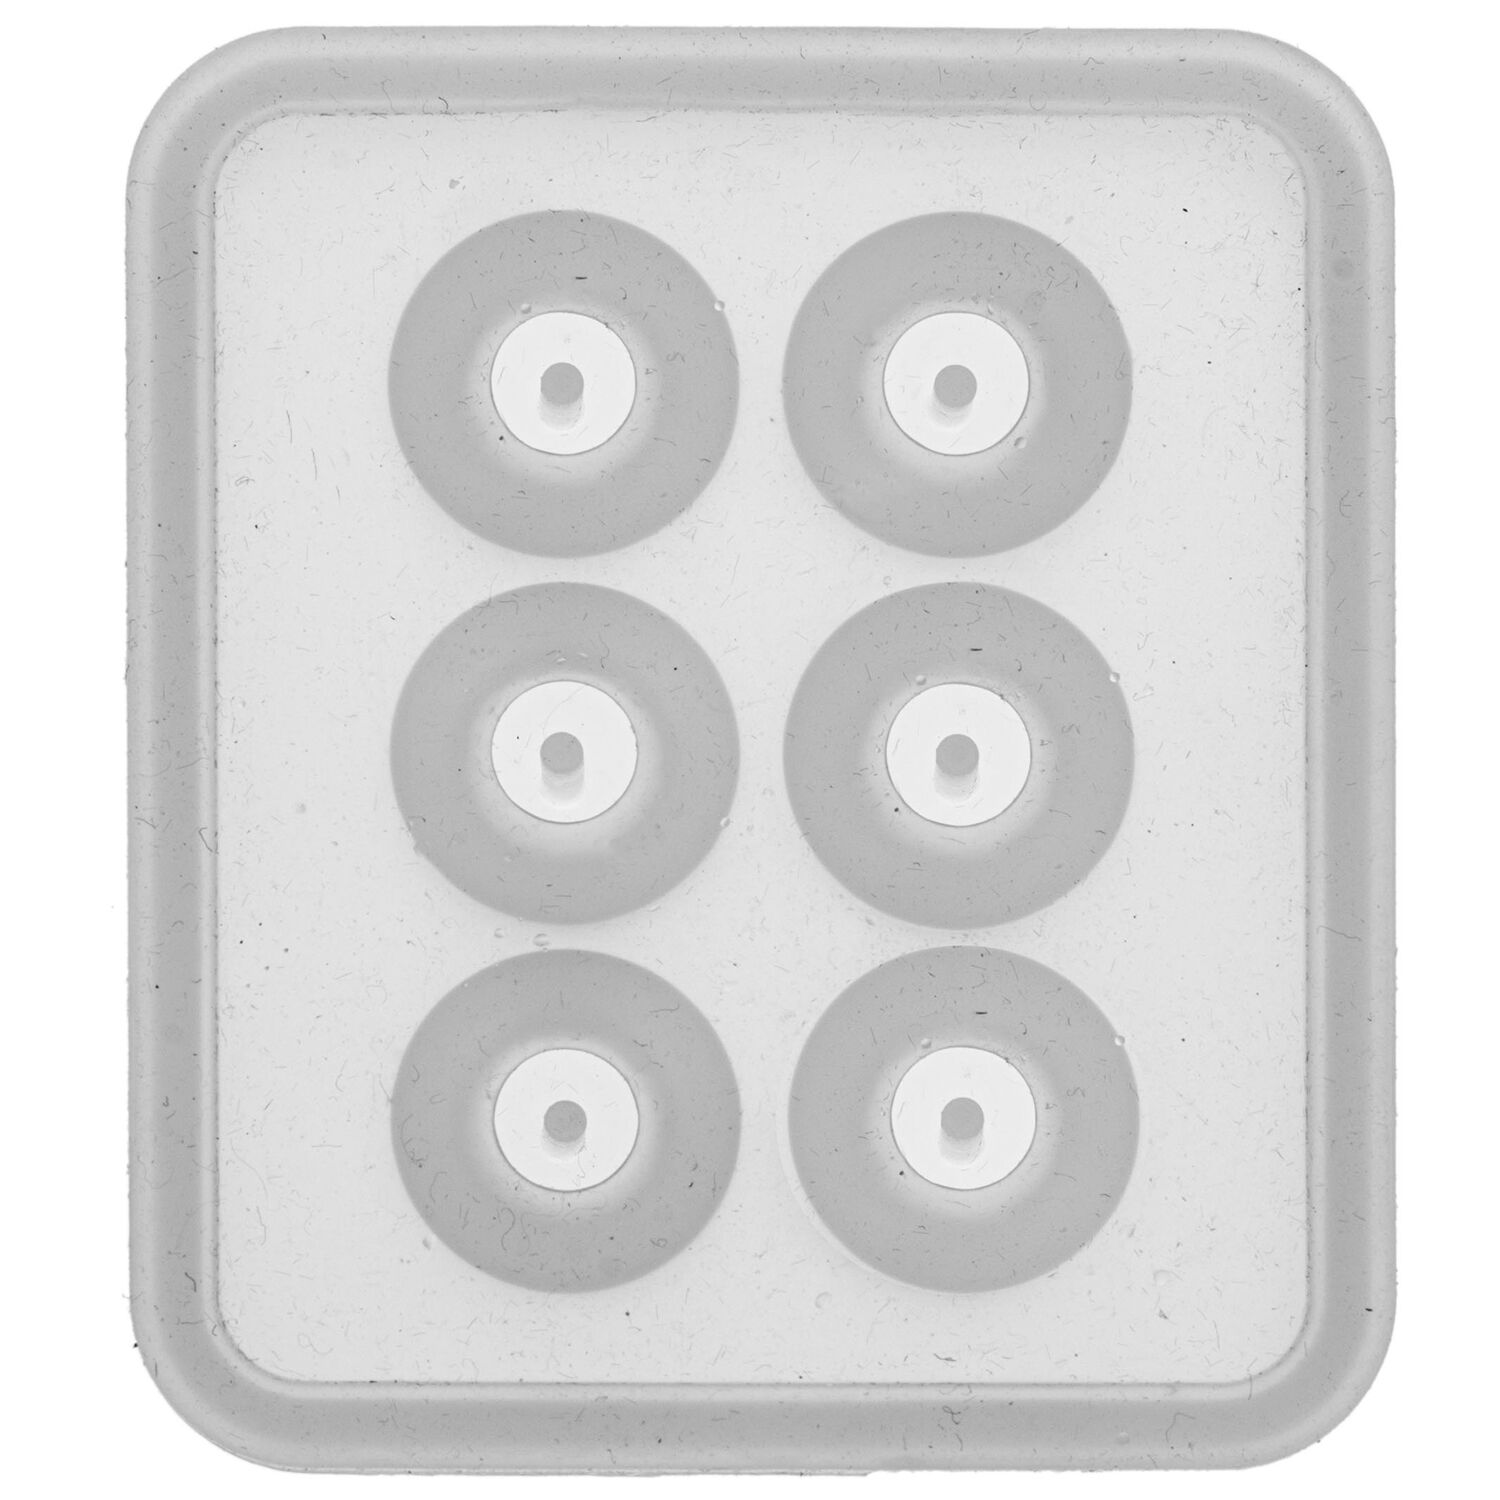 NEU Qualitts-Gieform aus Silikon / Silikongieform Perle / Kugel mit Loch, 12 mm, 6-teilig